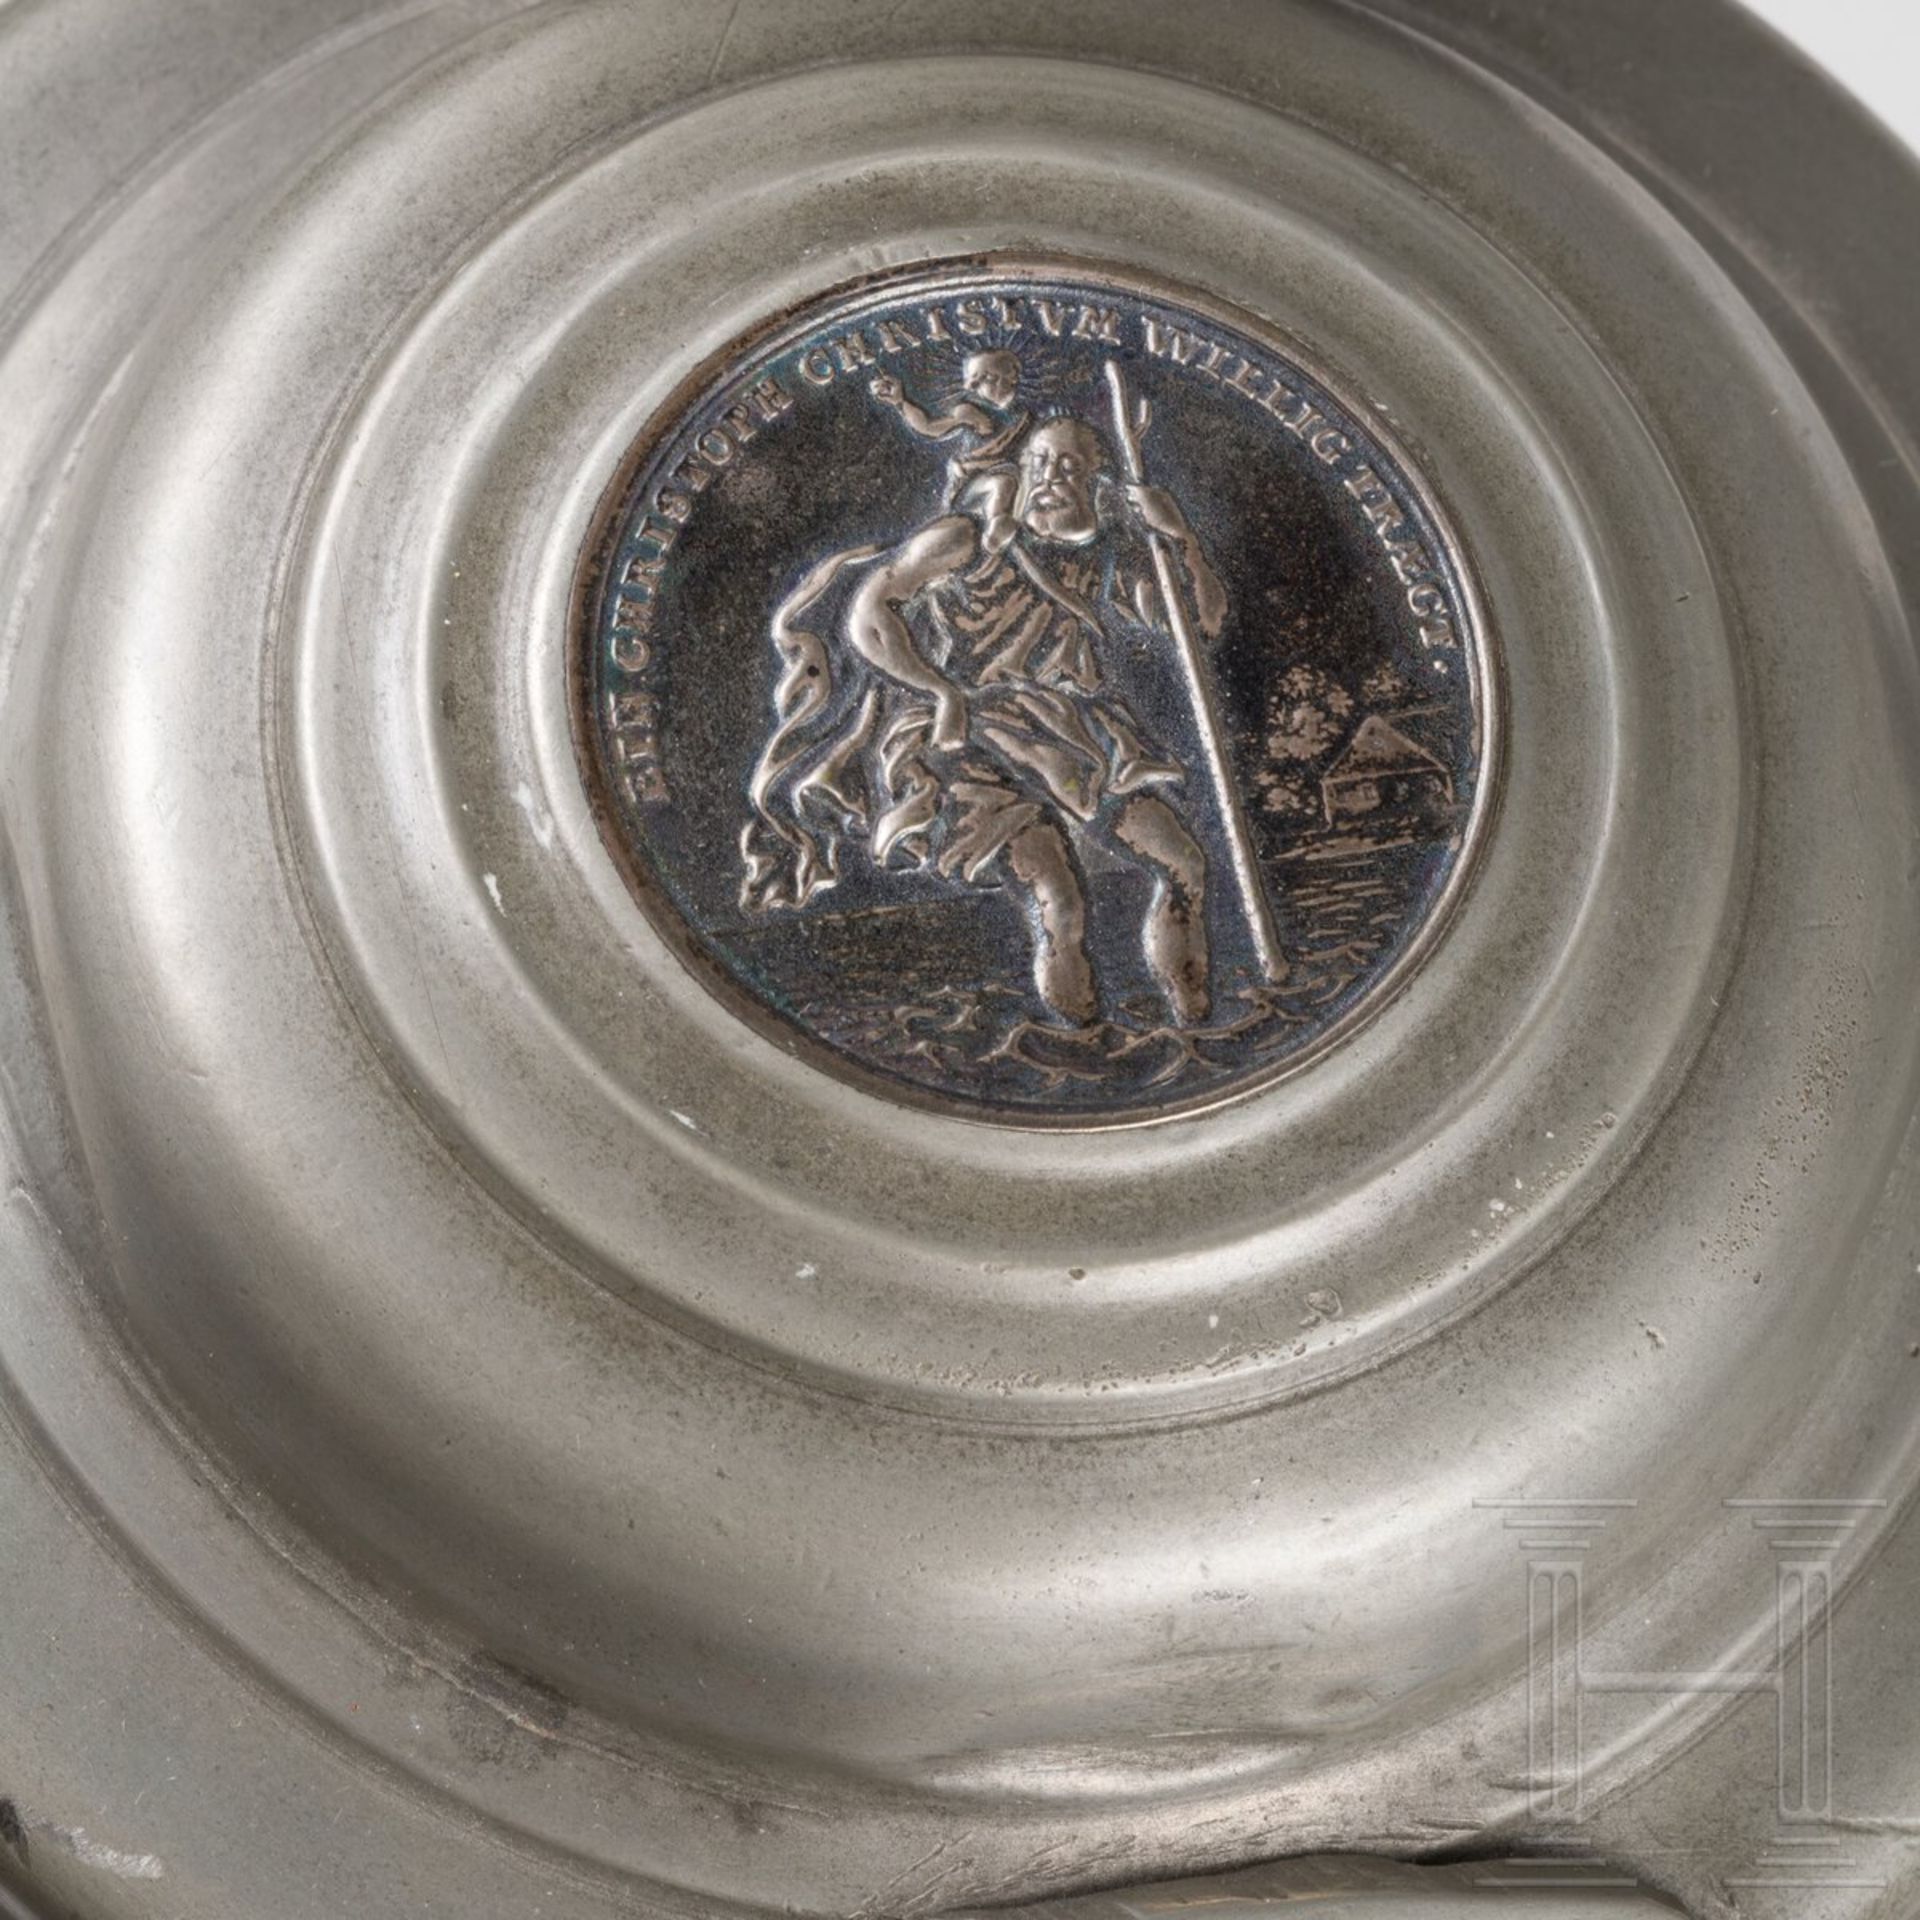 Taufkanne aus Zinn mit eingelegter Silbermedaille, deutsch, um 1760 - Image 3 of 5